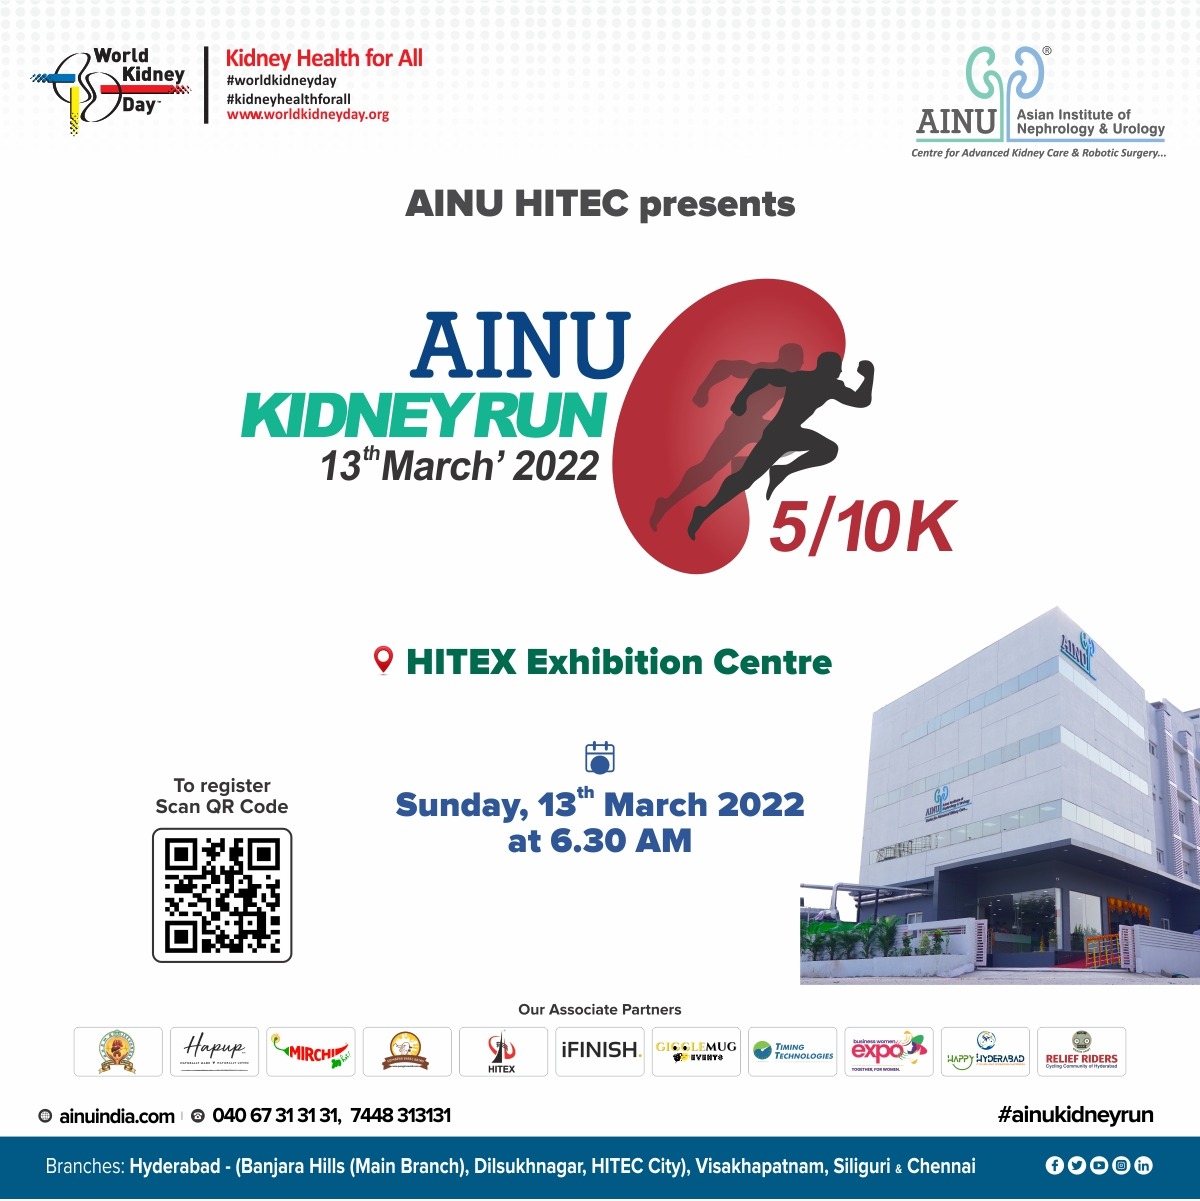 AINU Kidney Run